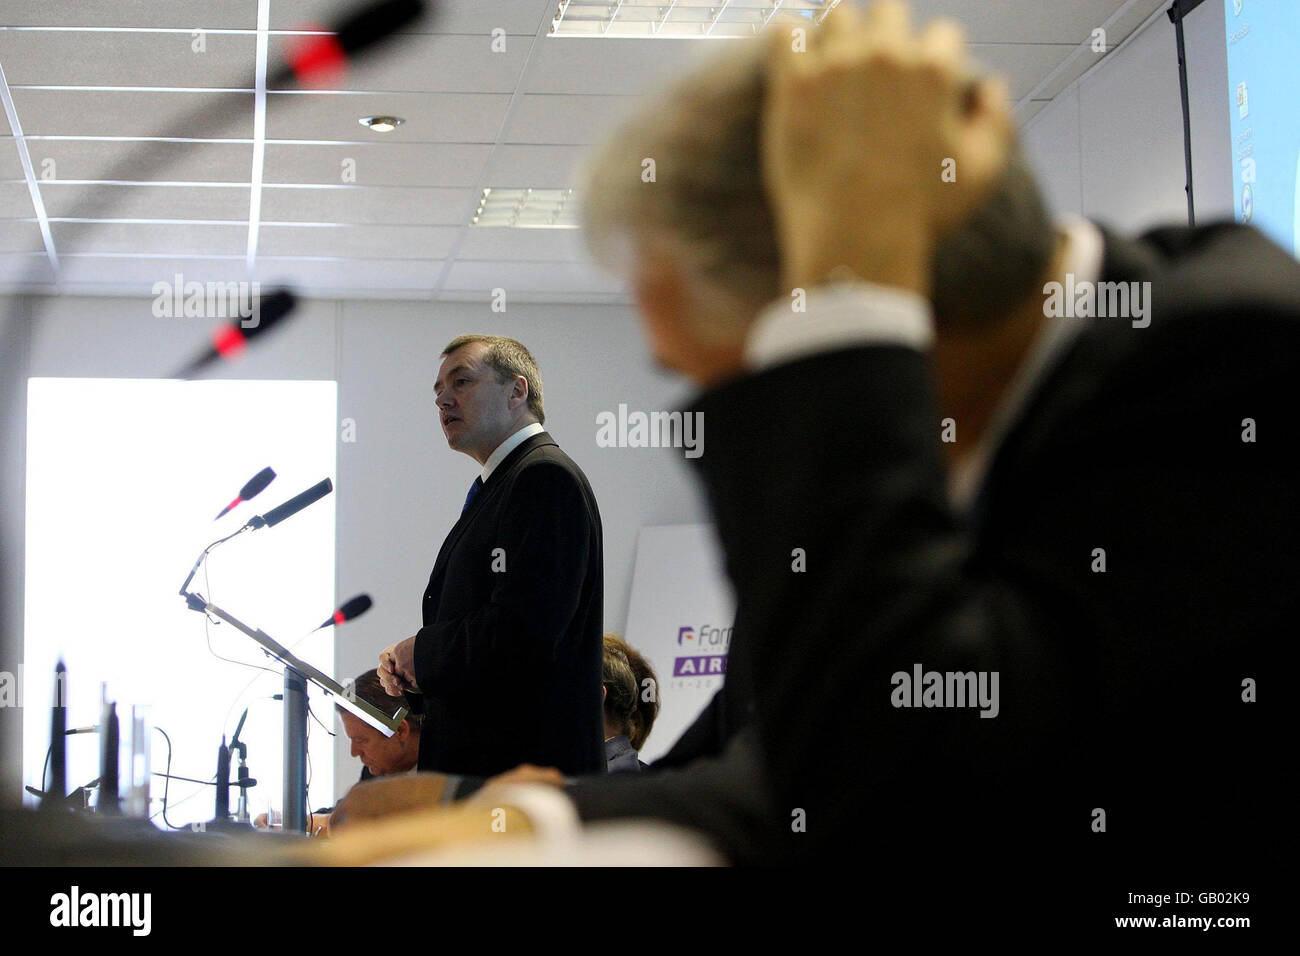 Le directeur général de British Airways, Willie Walsh, parle des émissions de carbone lors d'une conférence au salon aéronautique de Farnborough. Banque D'Images